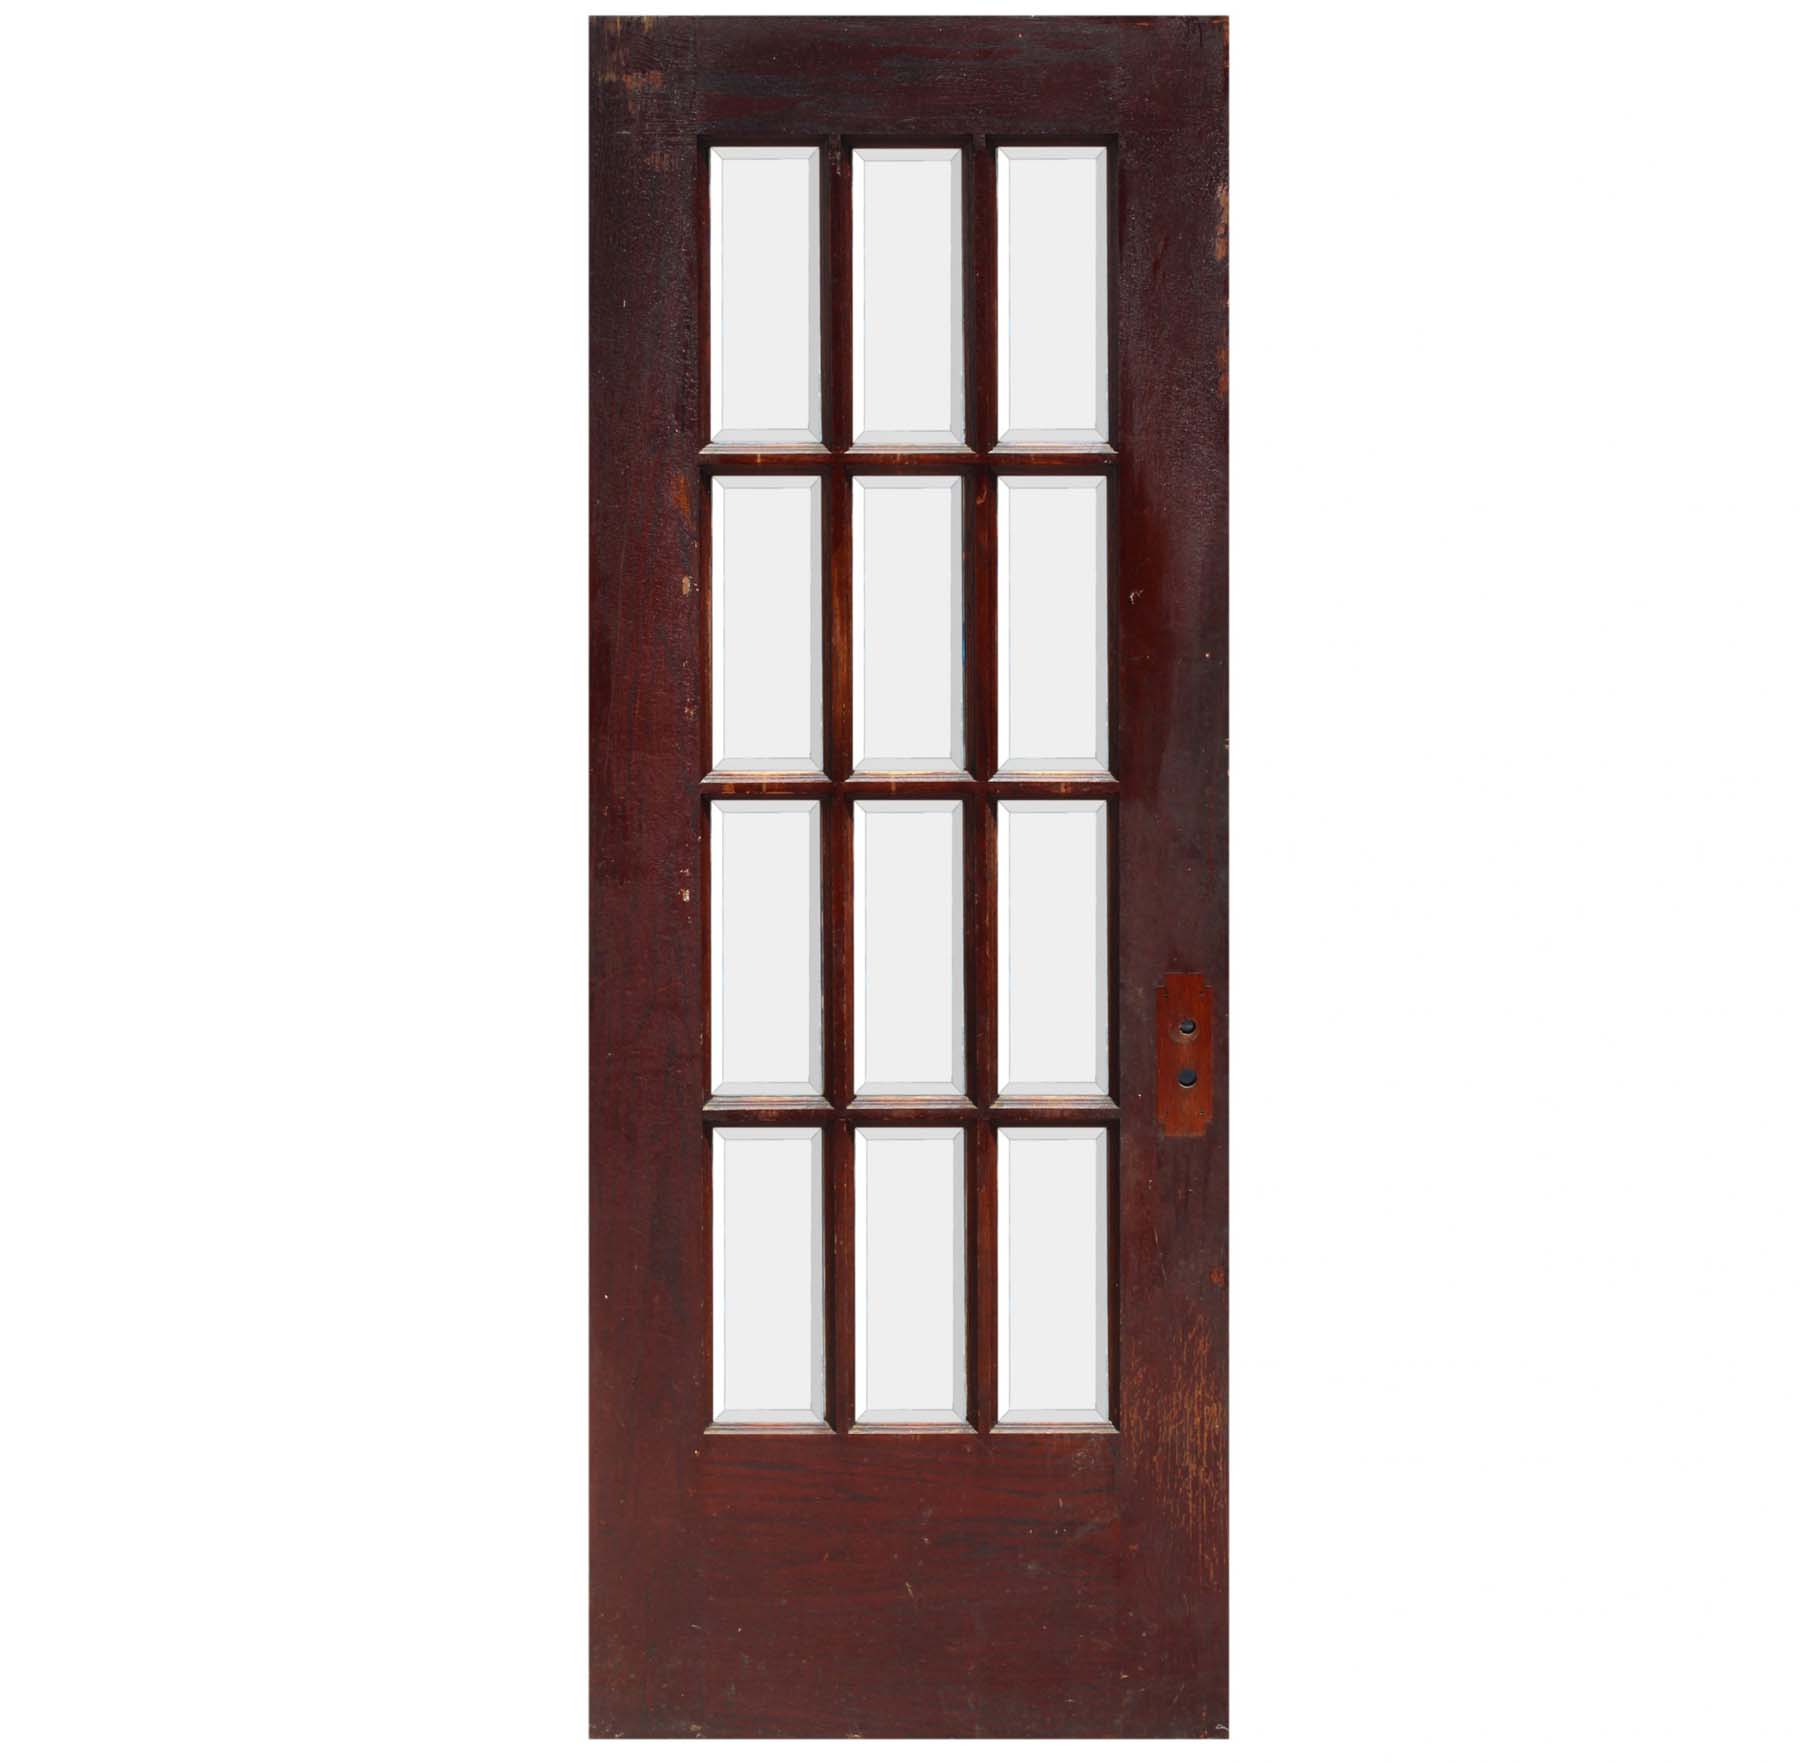 SOLD Reclaimed 30" Divided Light Oak Door, Beveled Glass-68623